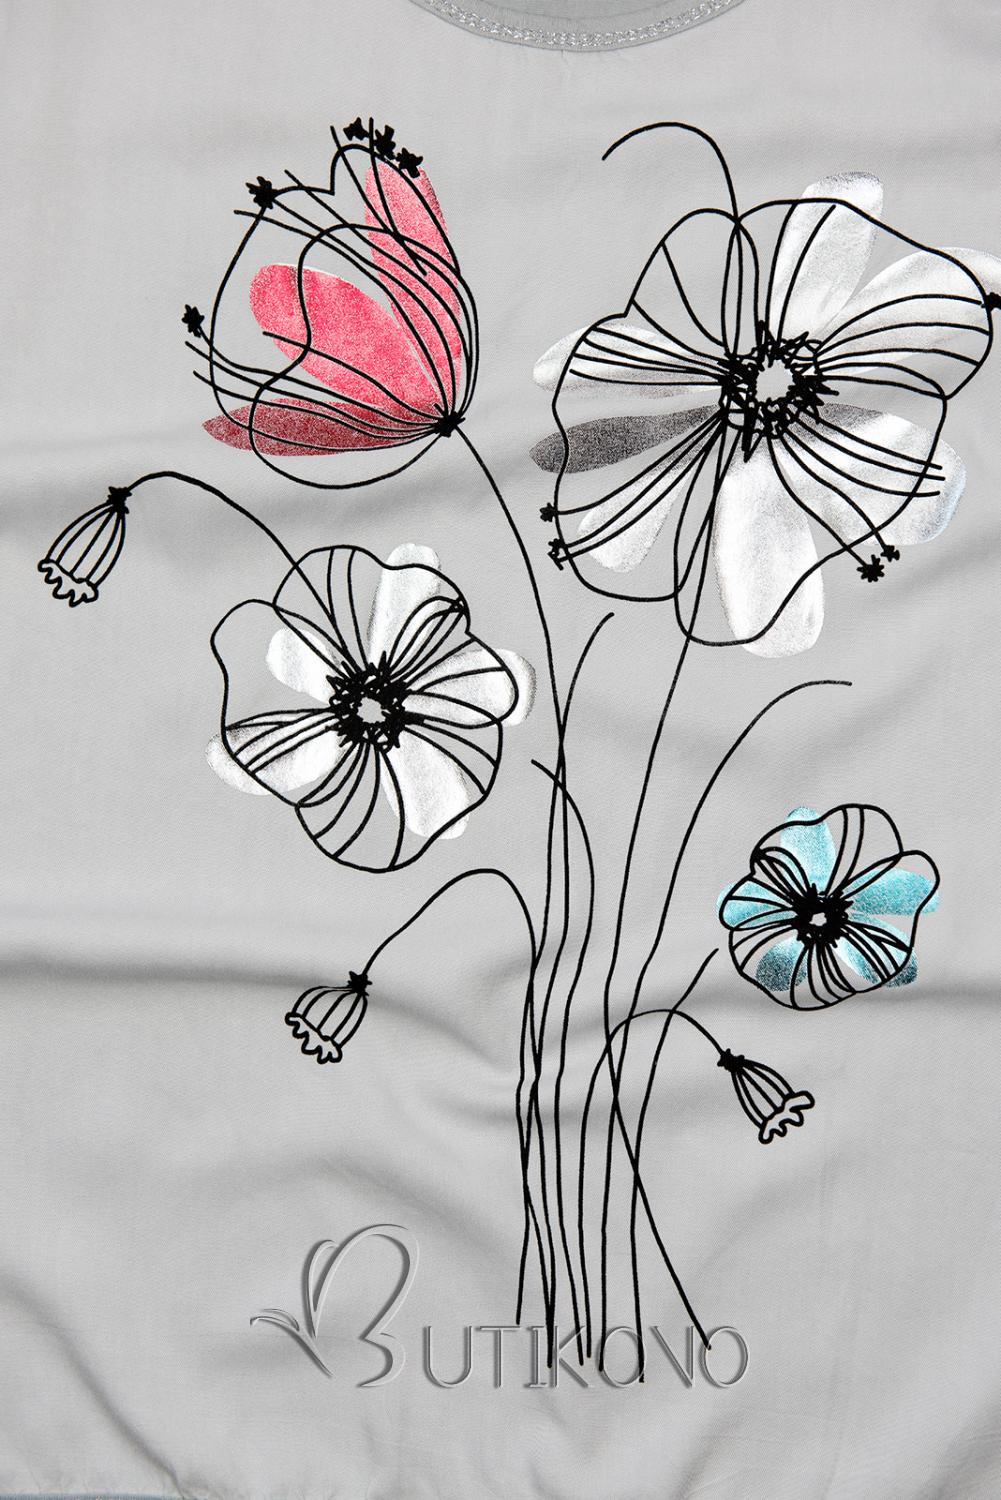 Sivé tričko s potlačou kvetov